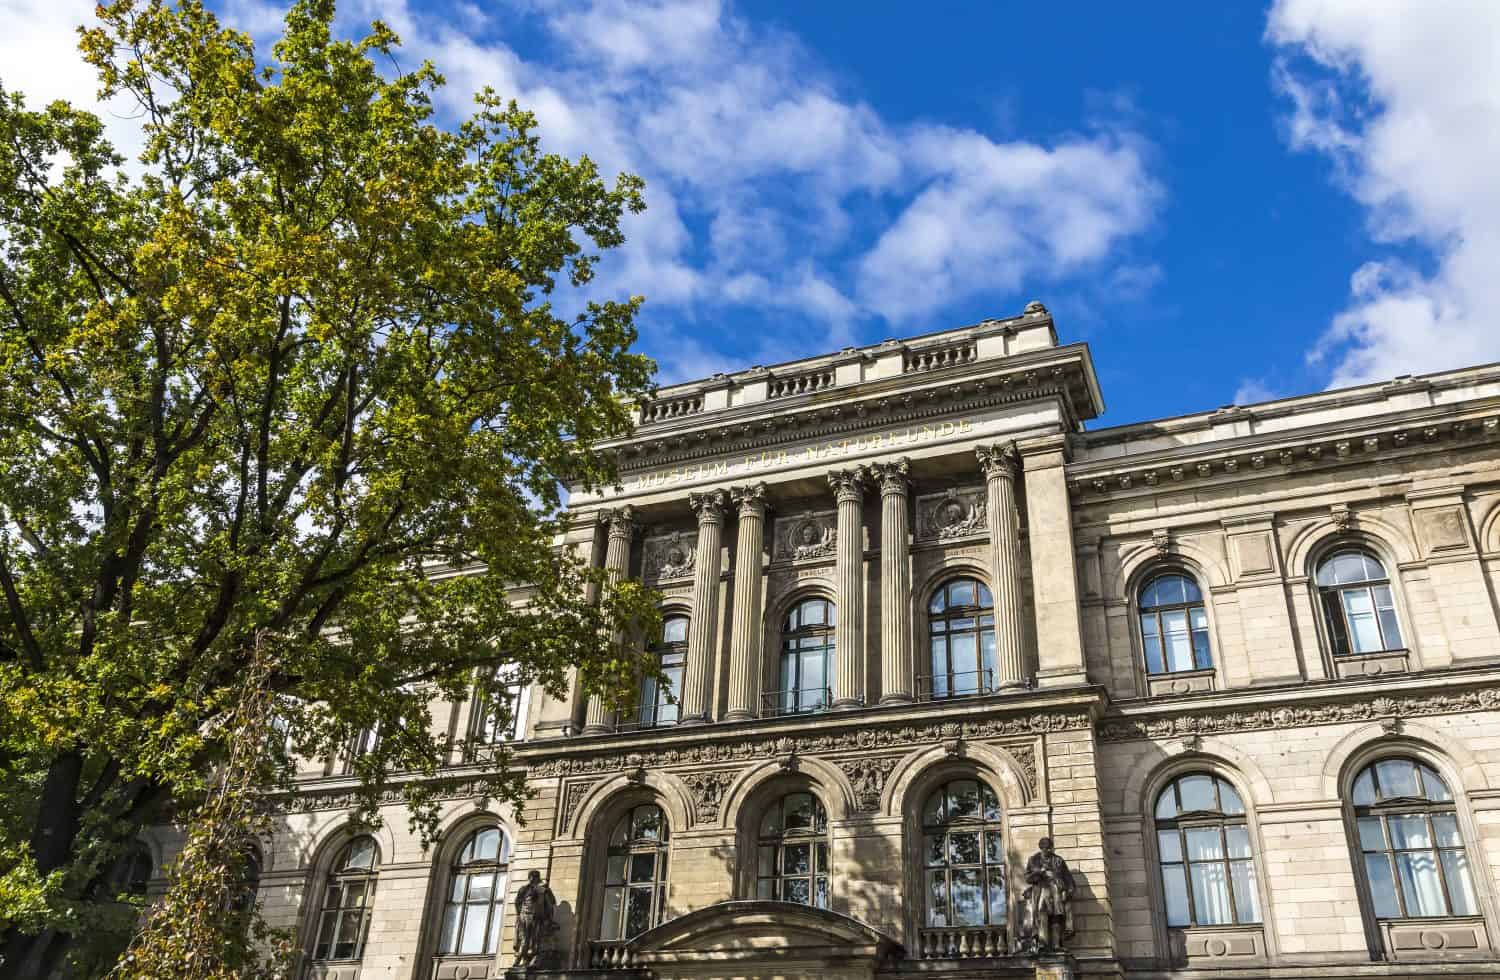 Facciata del Museo di Storia Naturale di Berlino (Museum fur Naturkunde).  Fondato nel 1810, ospita più milioni di esemplari zoologici, paleontologici e mineralogici